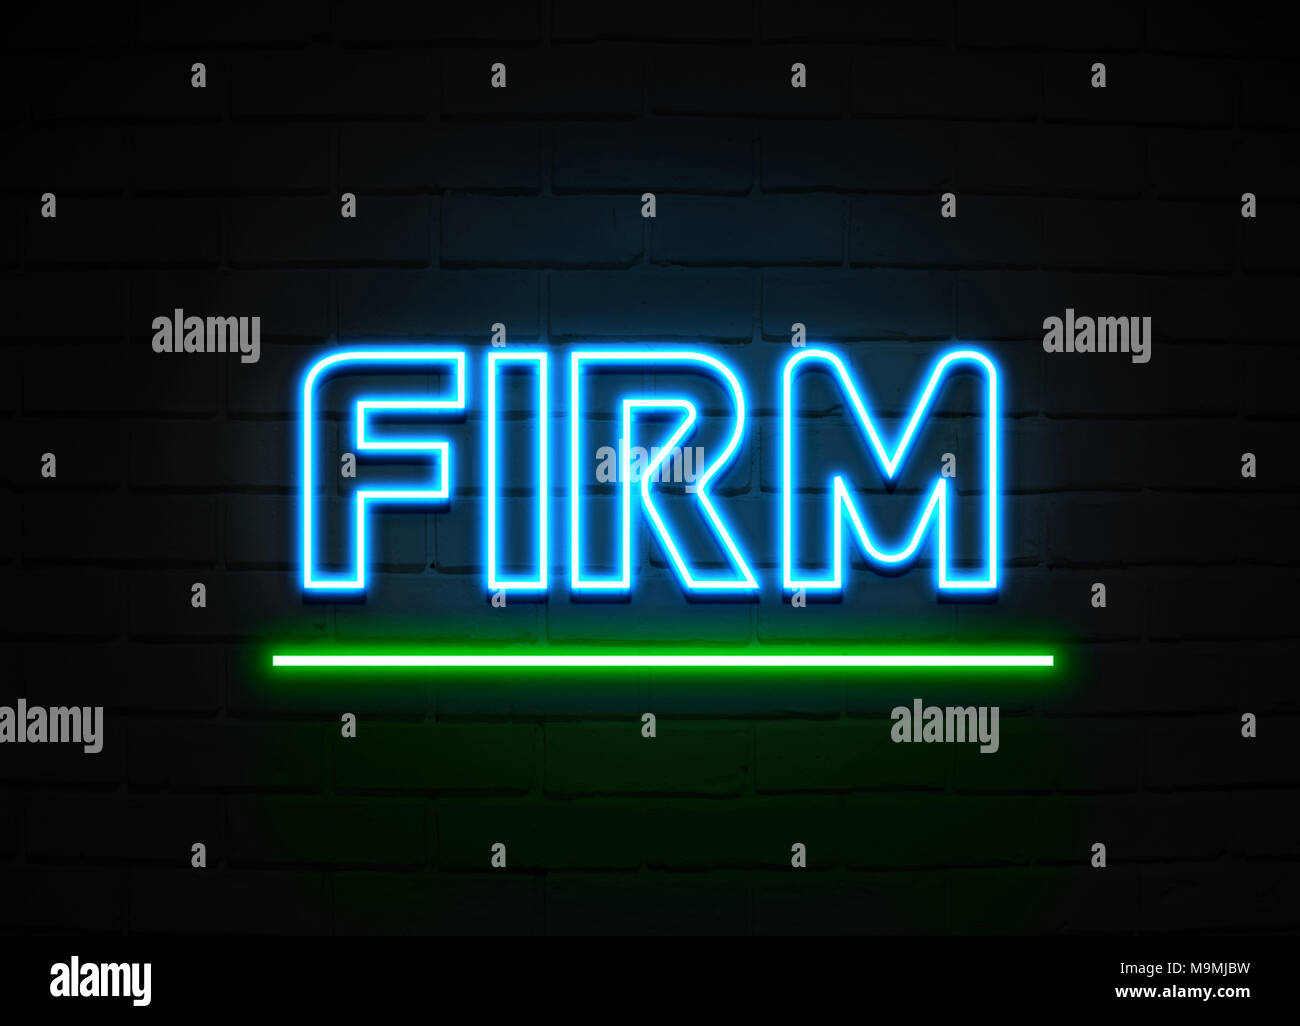 Firma Leuchtreklame - glühende Leuchtreklame auf brickwall Wand - 3D-Royalty Free Stock Illustration dargestellt. Stockfoto